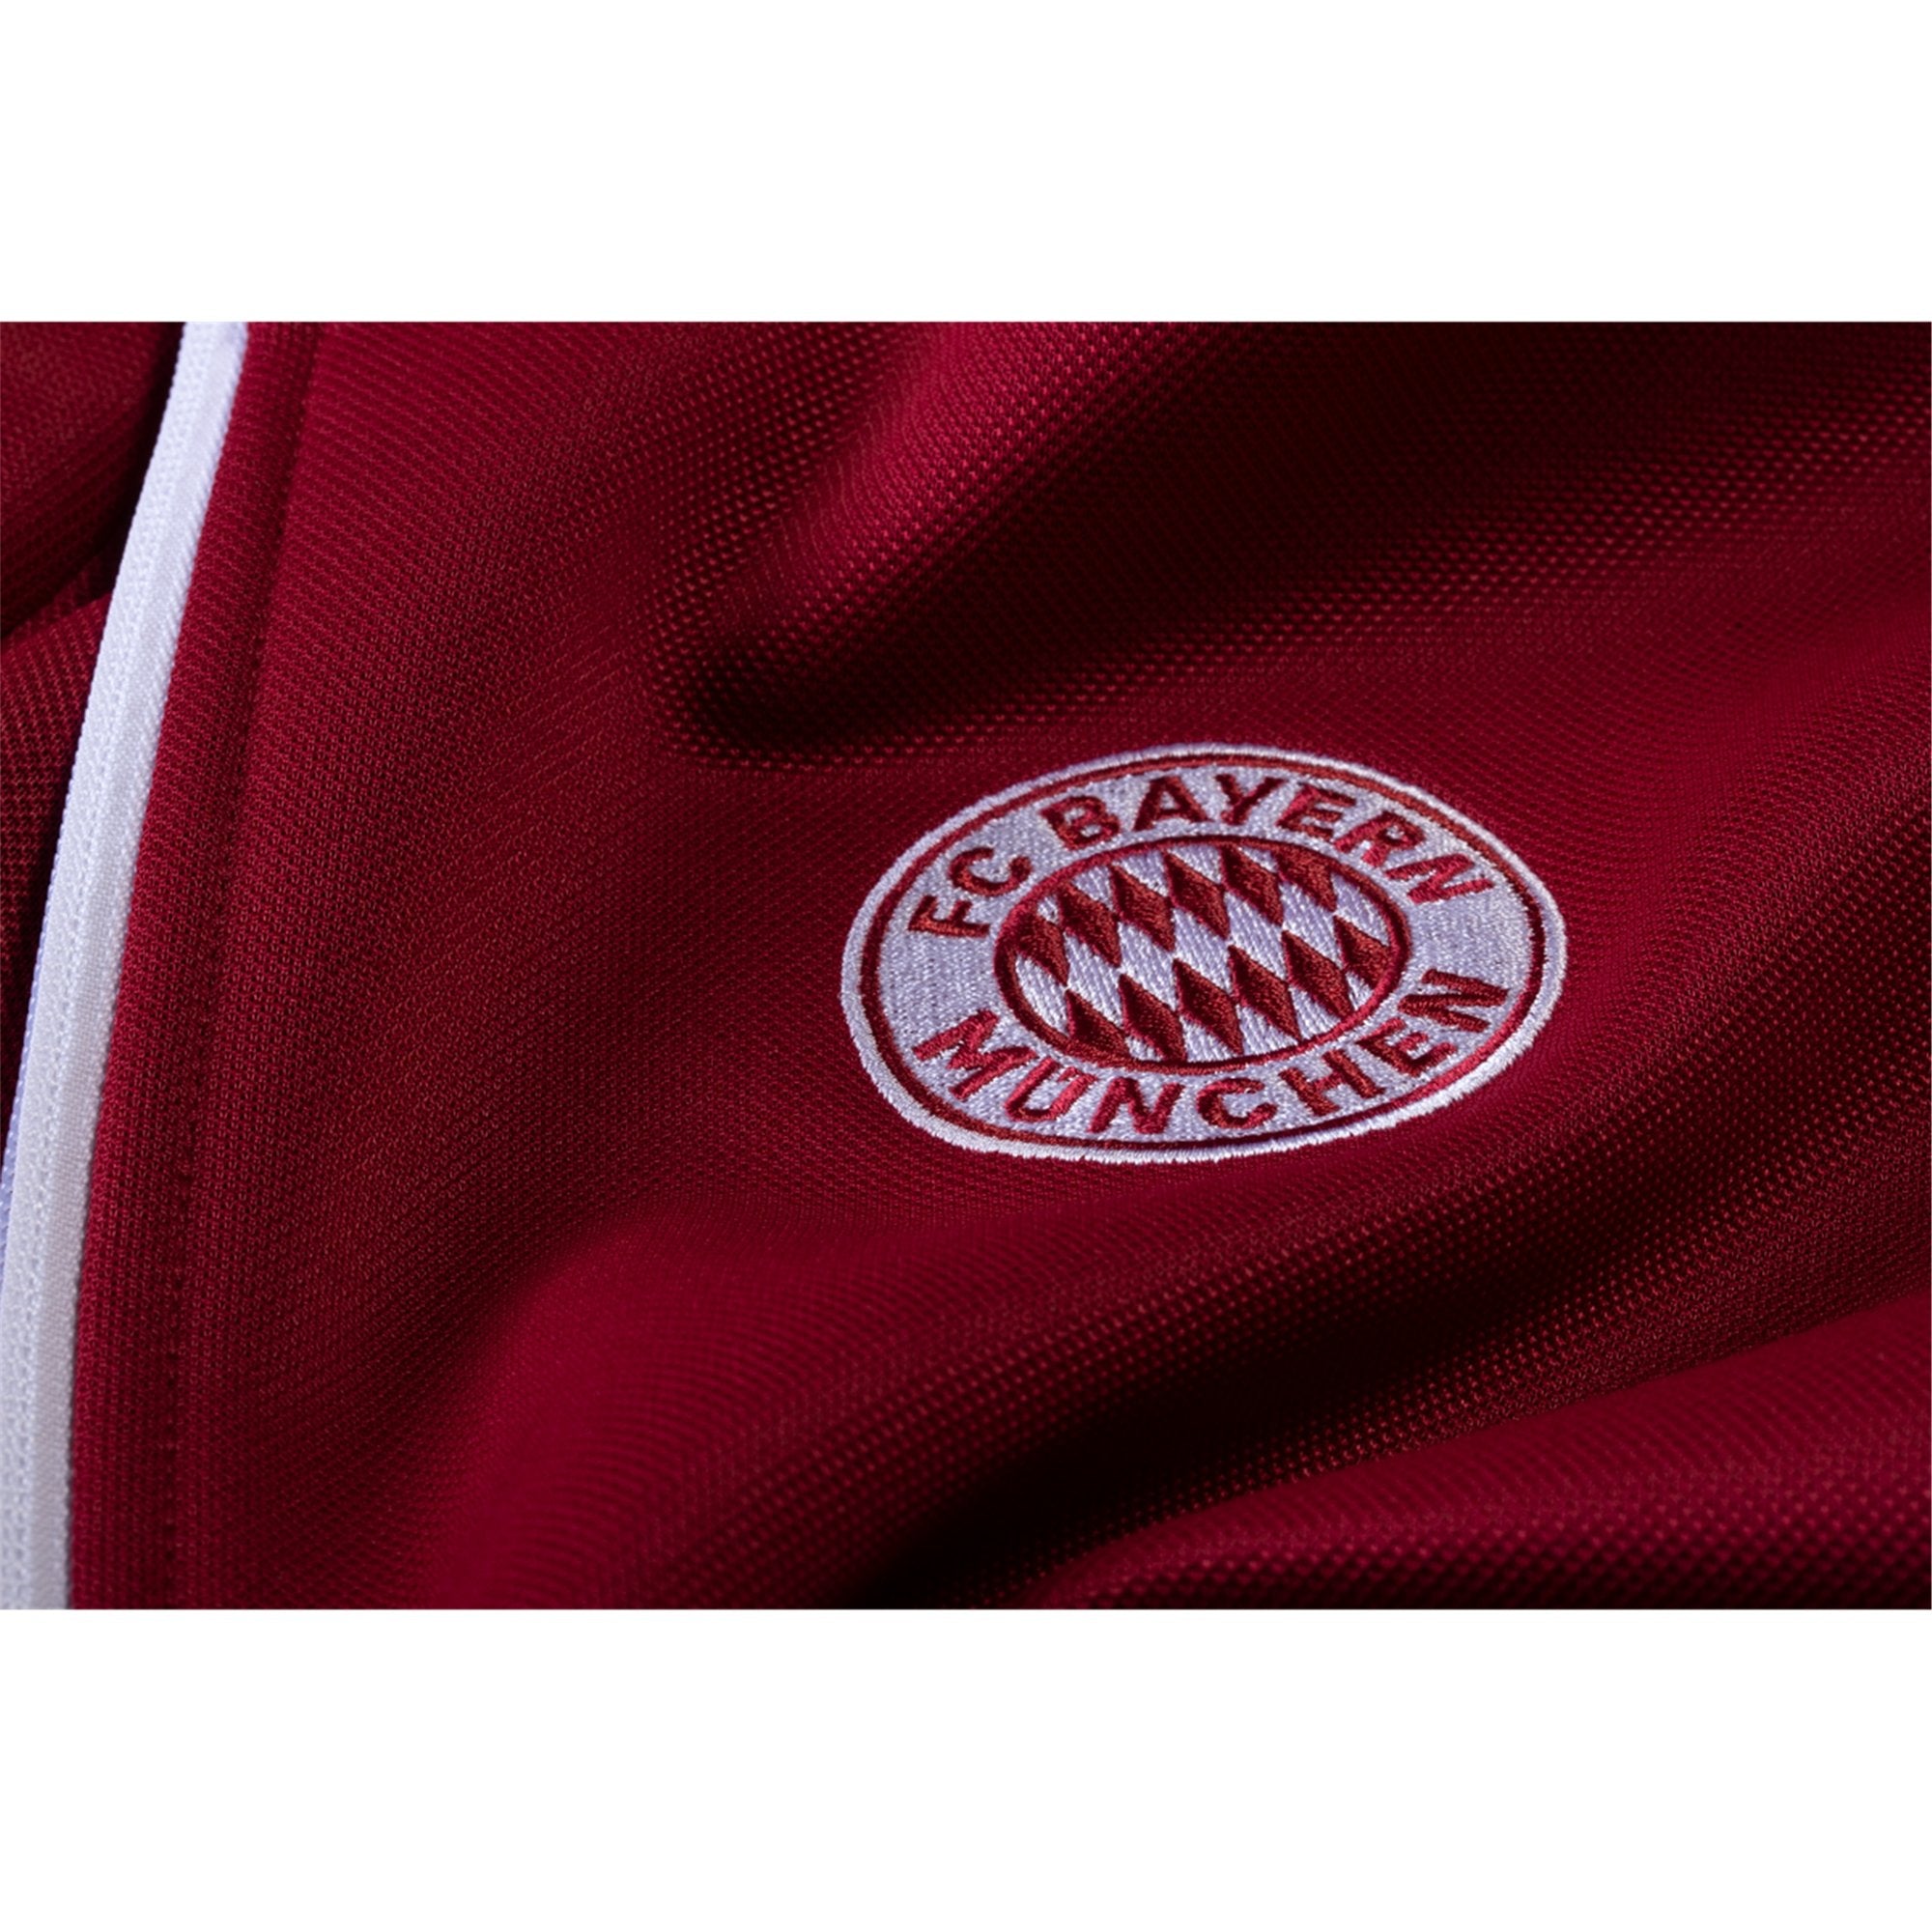 Bayern Munich 120th Anniversary Jersey by adidas